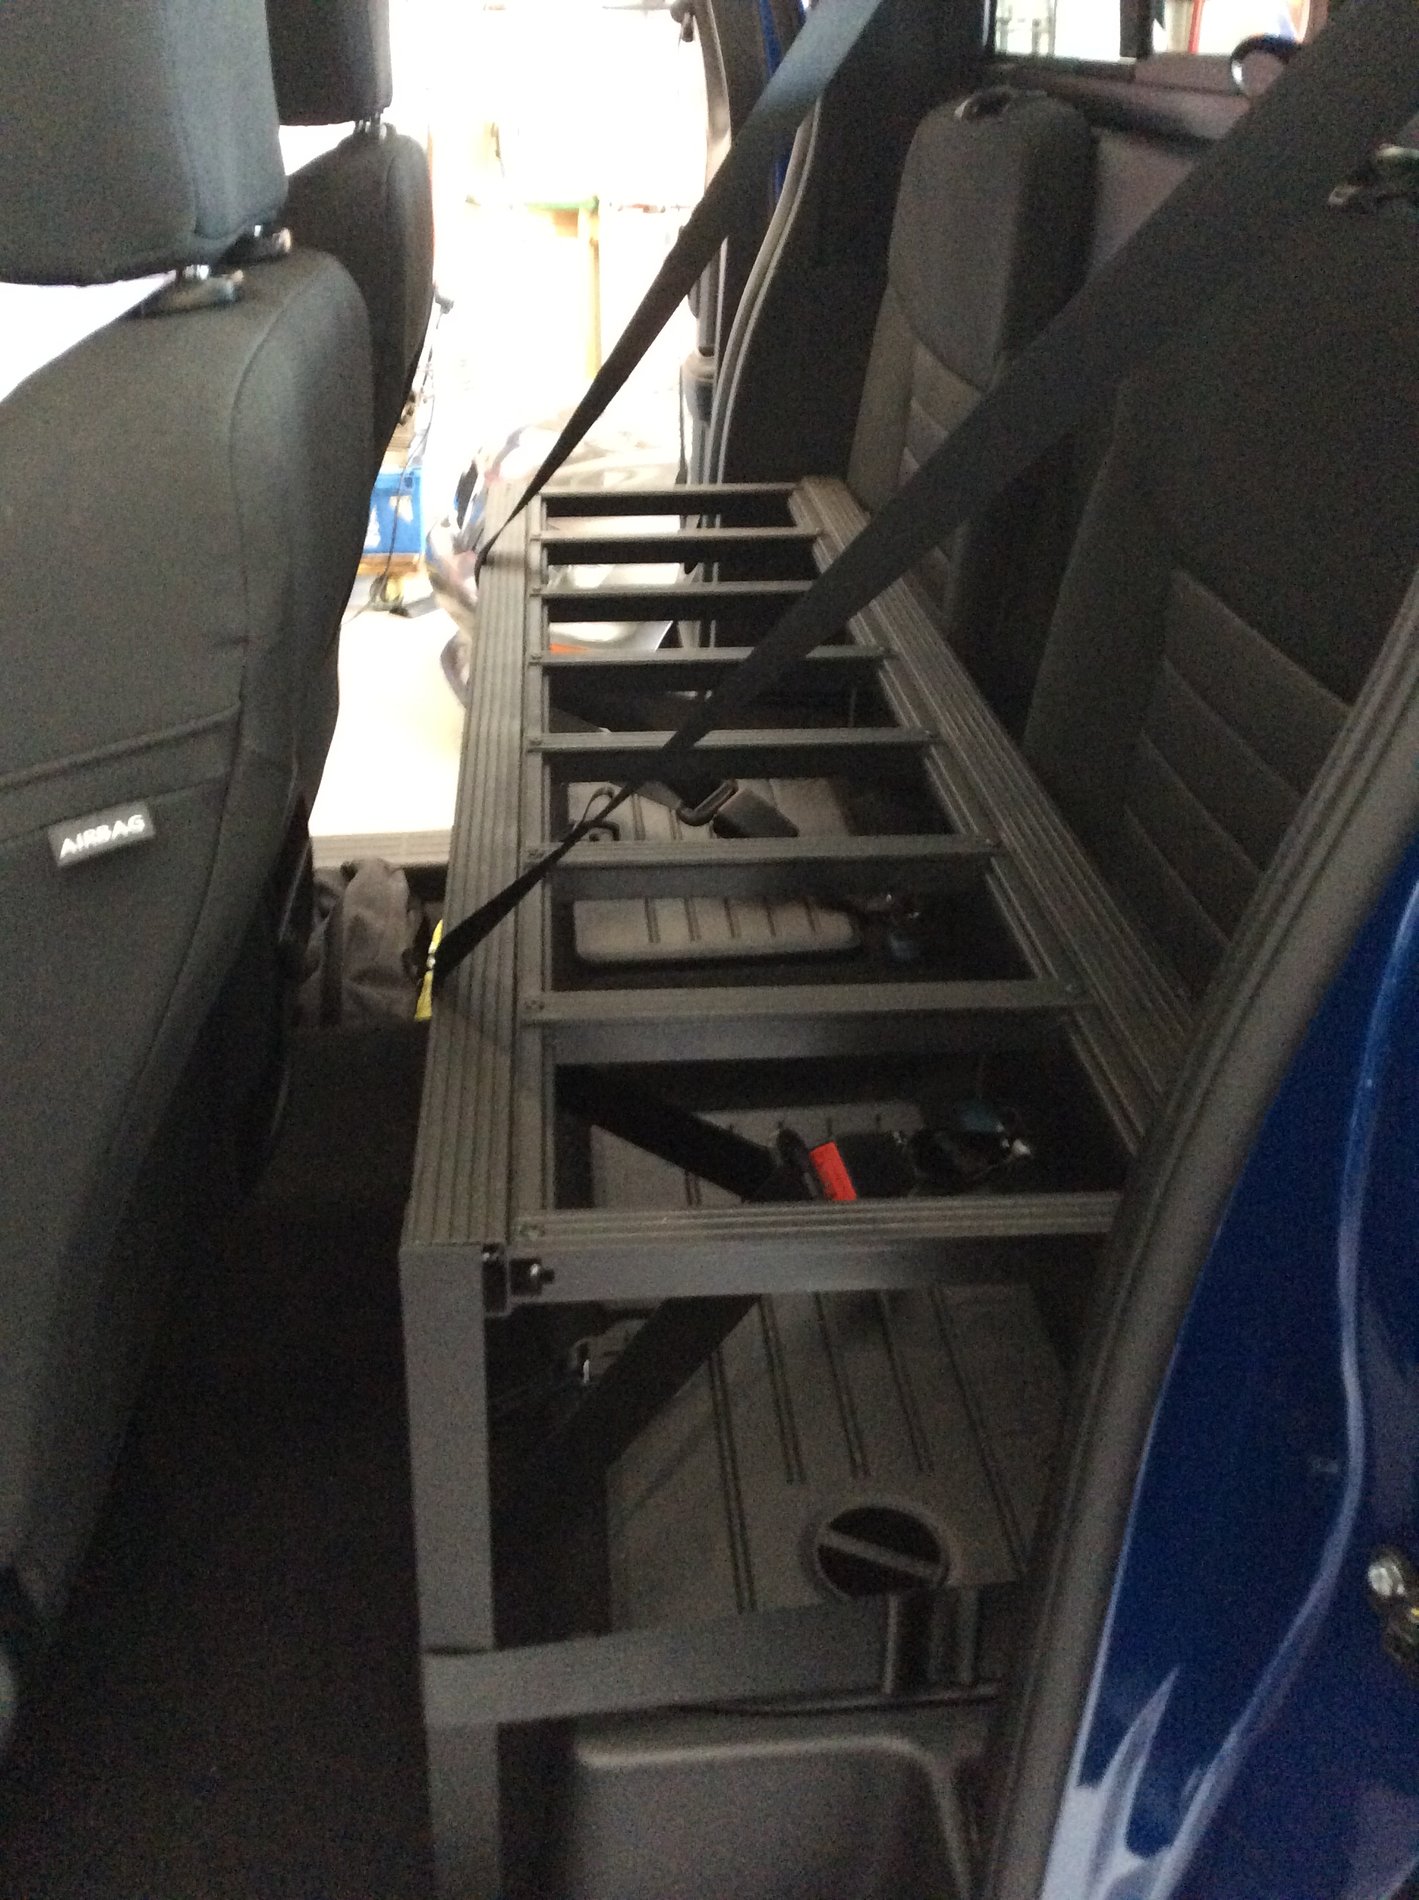 Ford Ranger Super cab rear seat storage upgrade 6FD35377-E8B3-442D-94DD-D59FEFA4EBB5